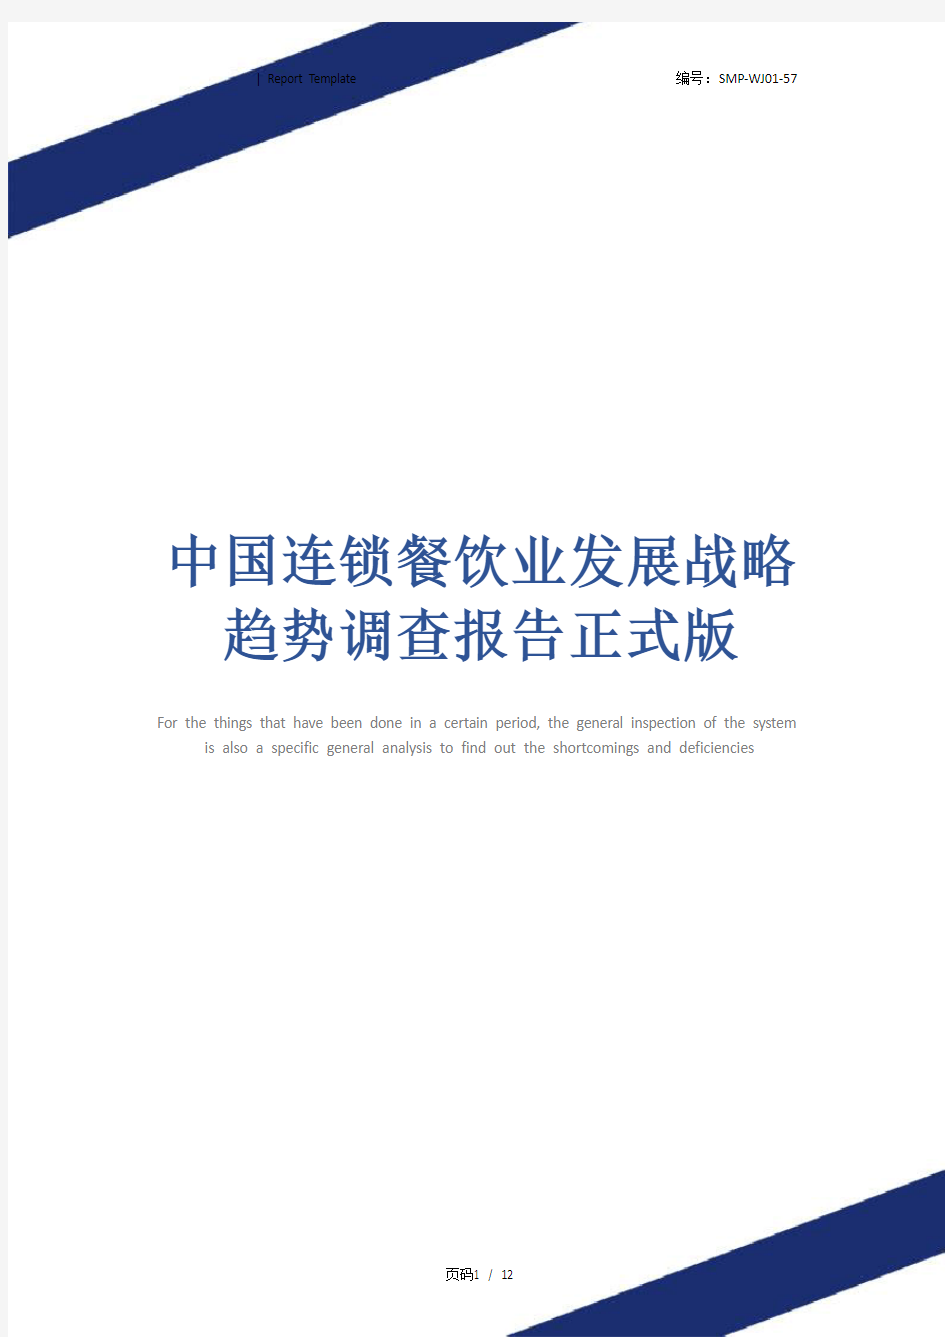 中国连锁餐饮业发展战略趋势调查报告正式版